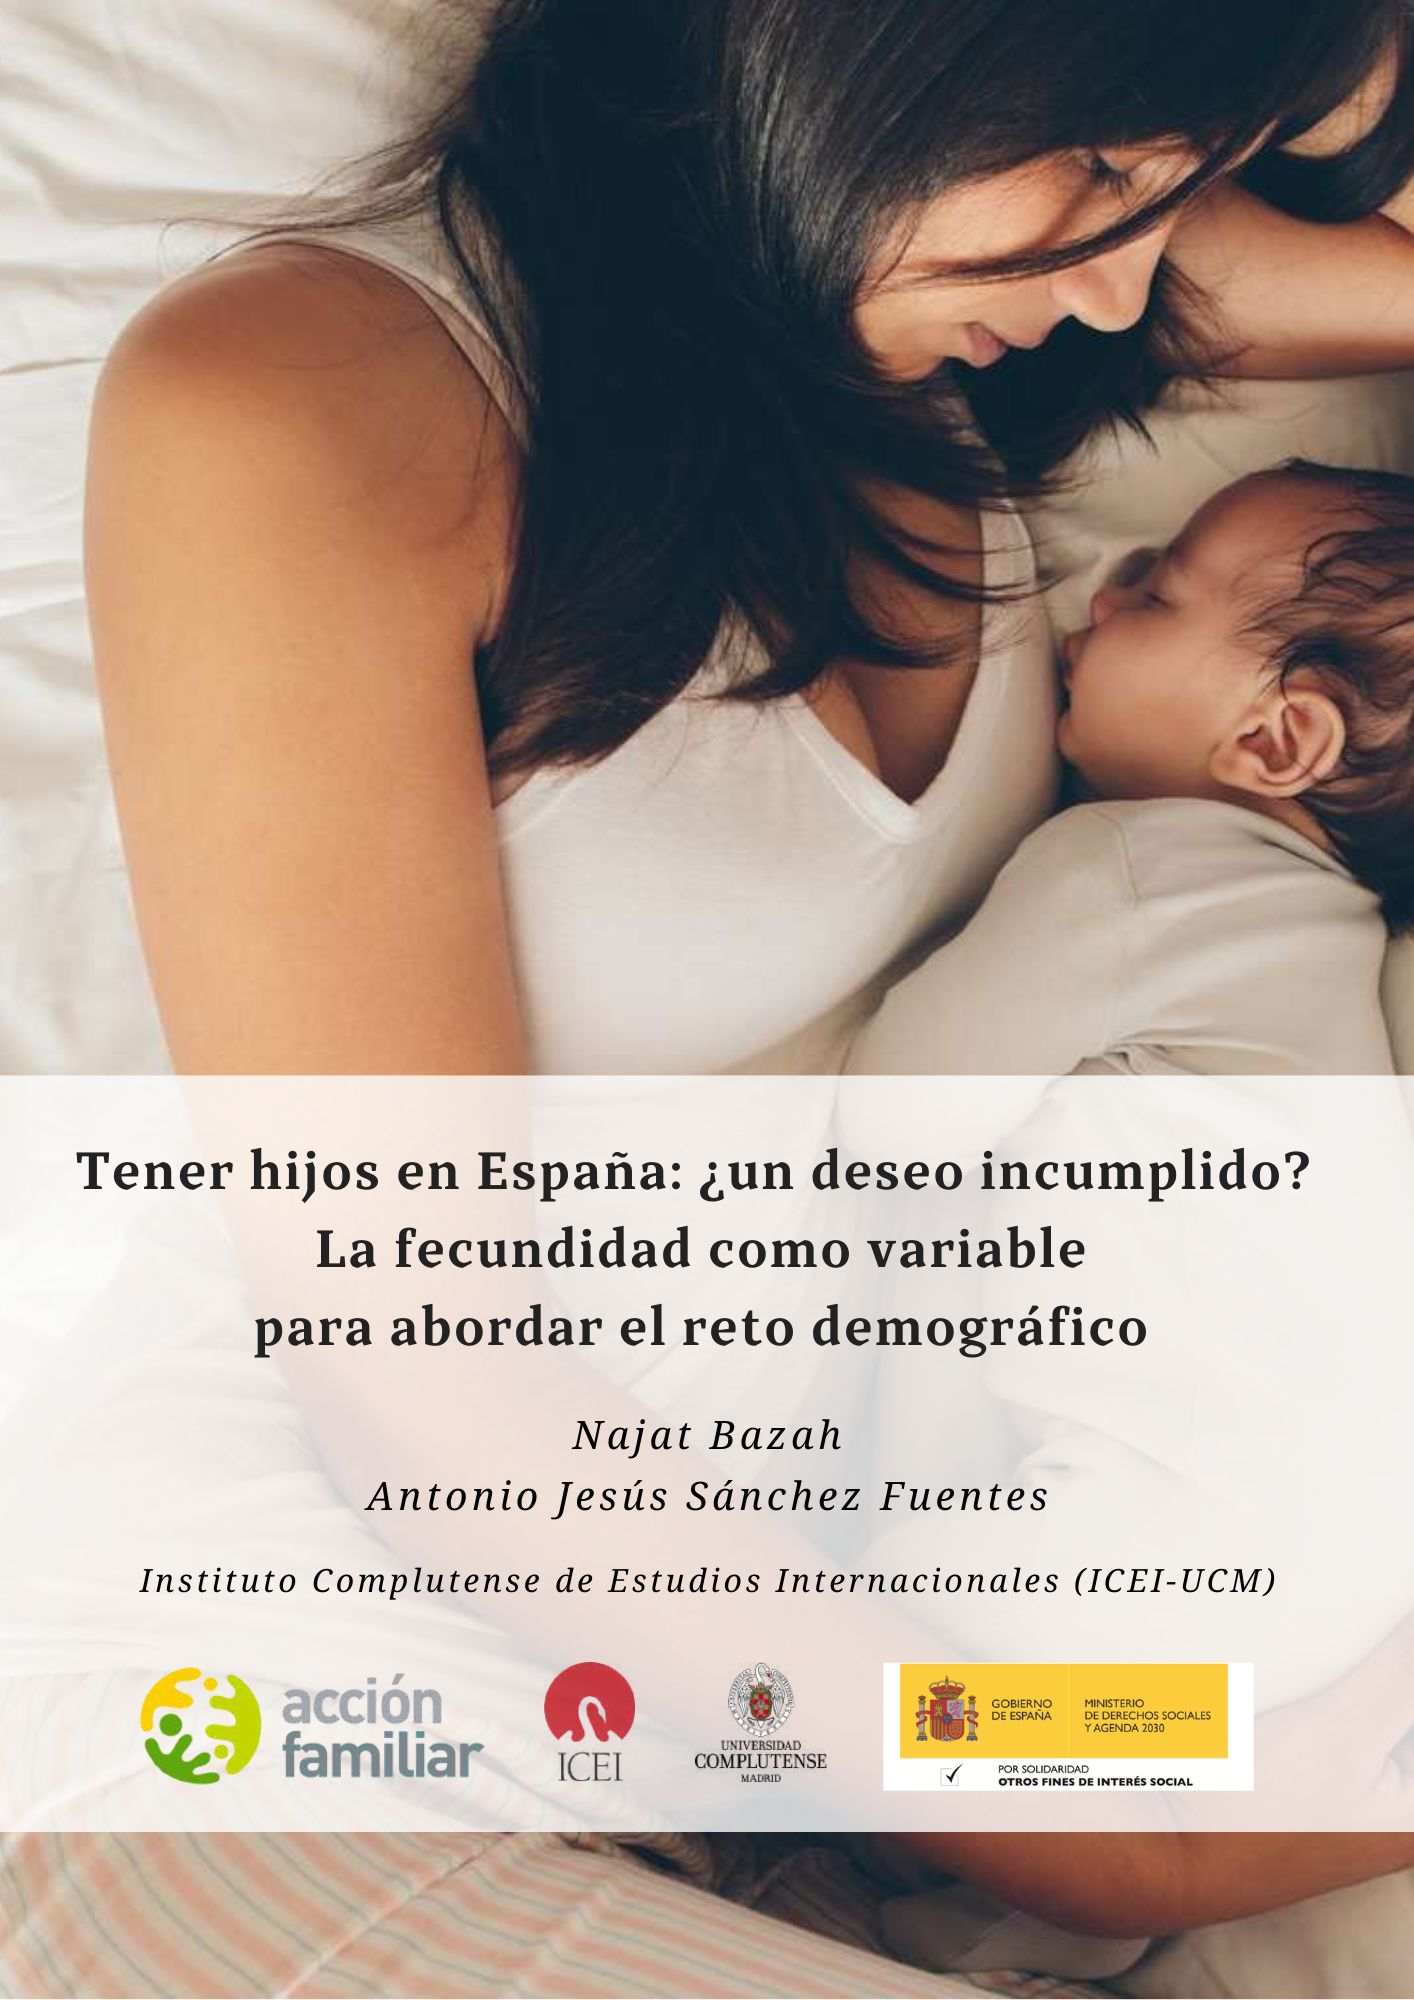 Tener hijos en España: ¿un deseo incumplido? La fecundidad como variable para abordar el reto demográfico.